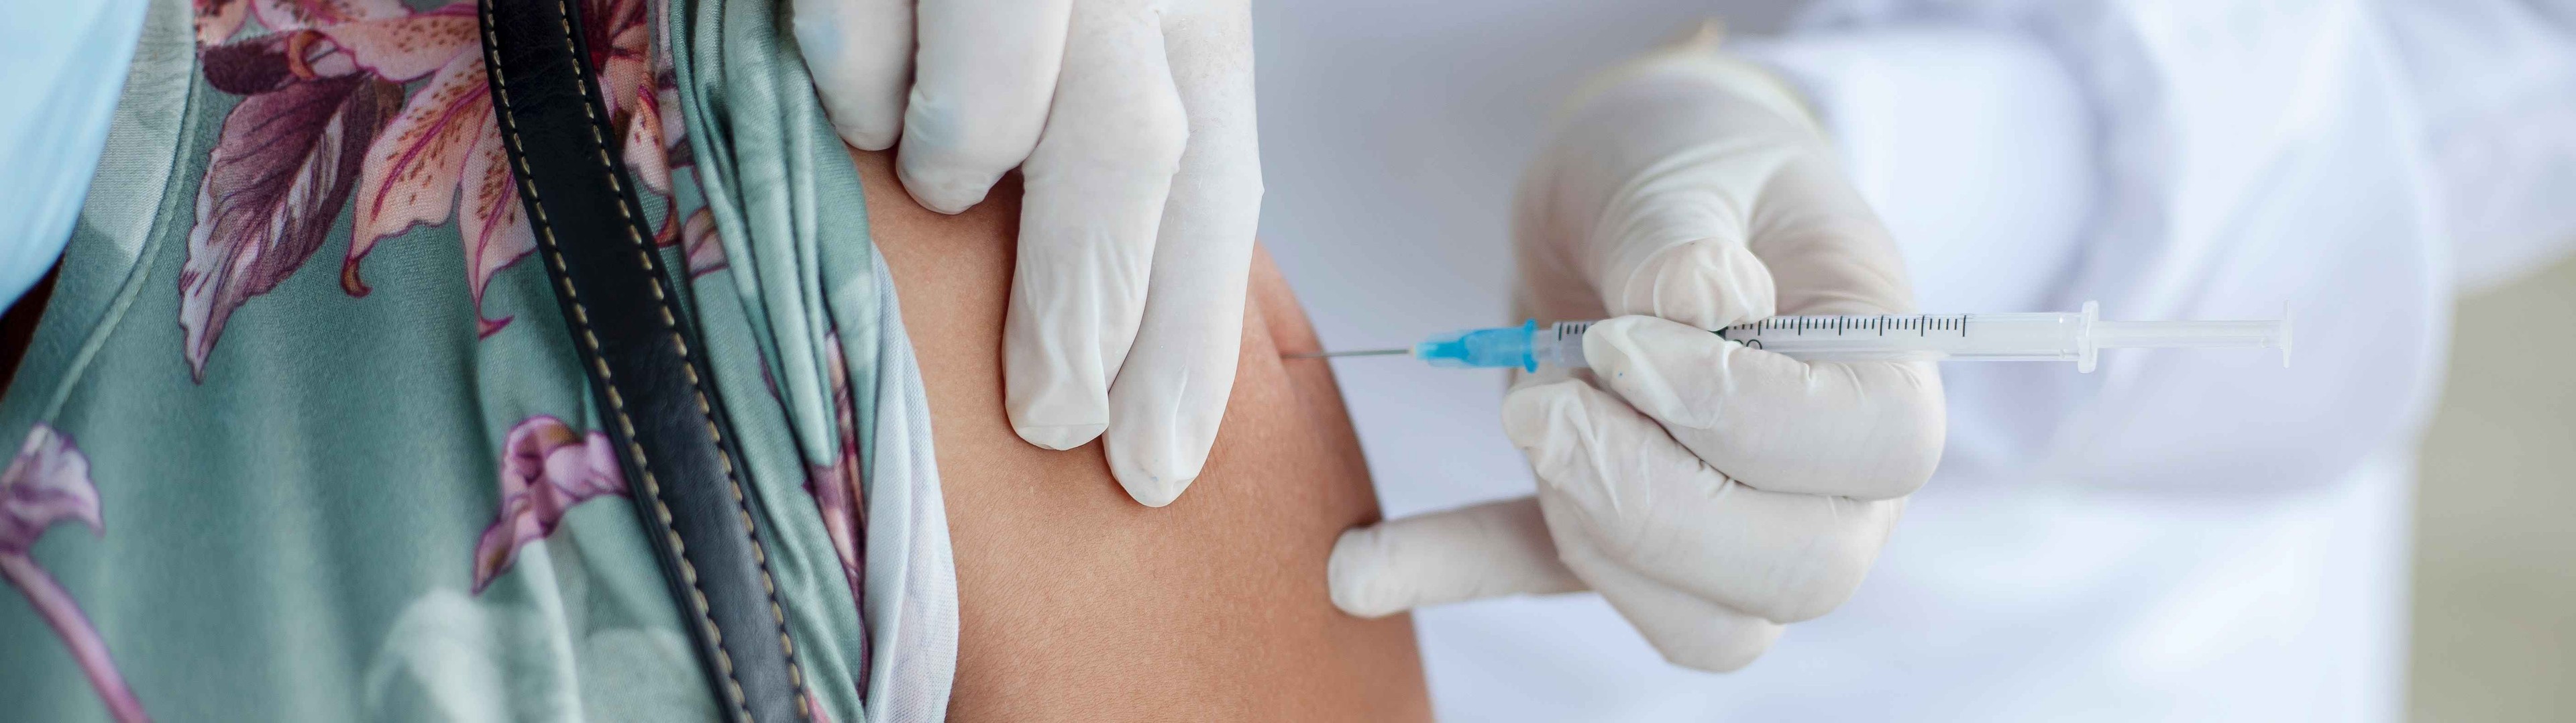 La EMA descarta que haya relación entre las vacunas Covid y la ausencia de menstruación